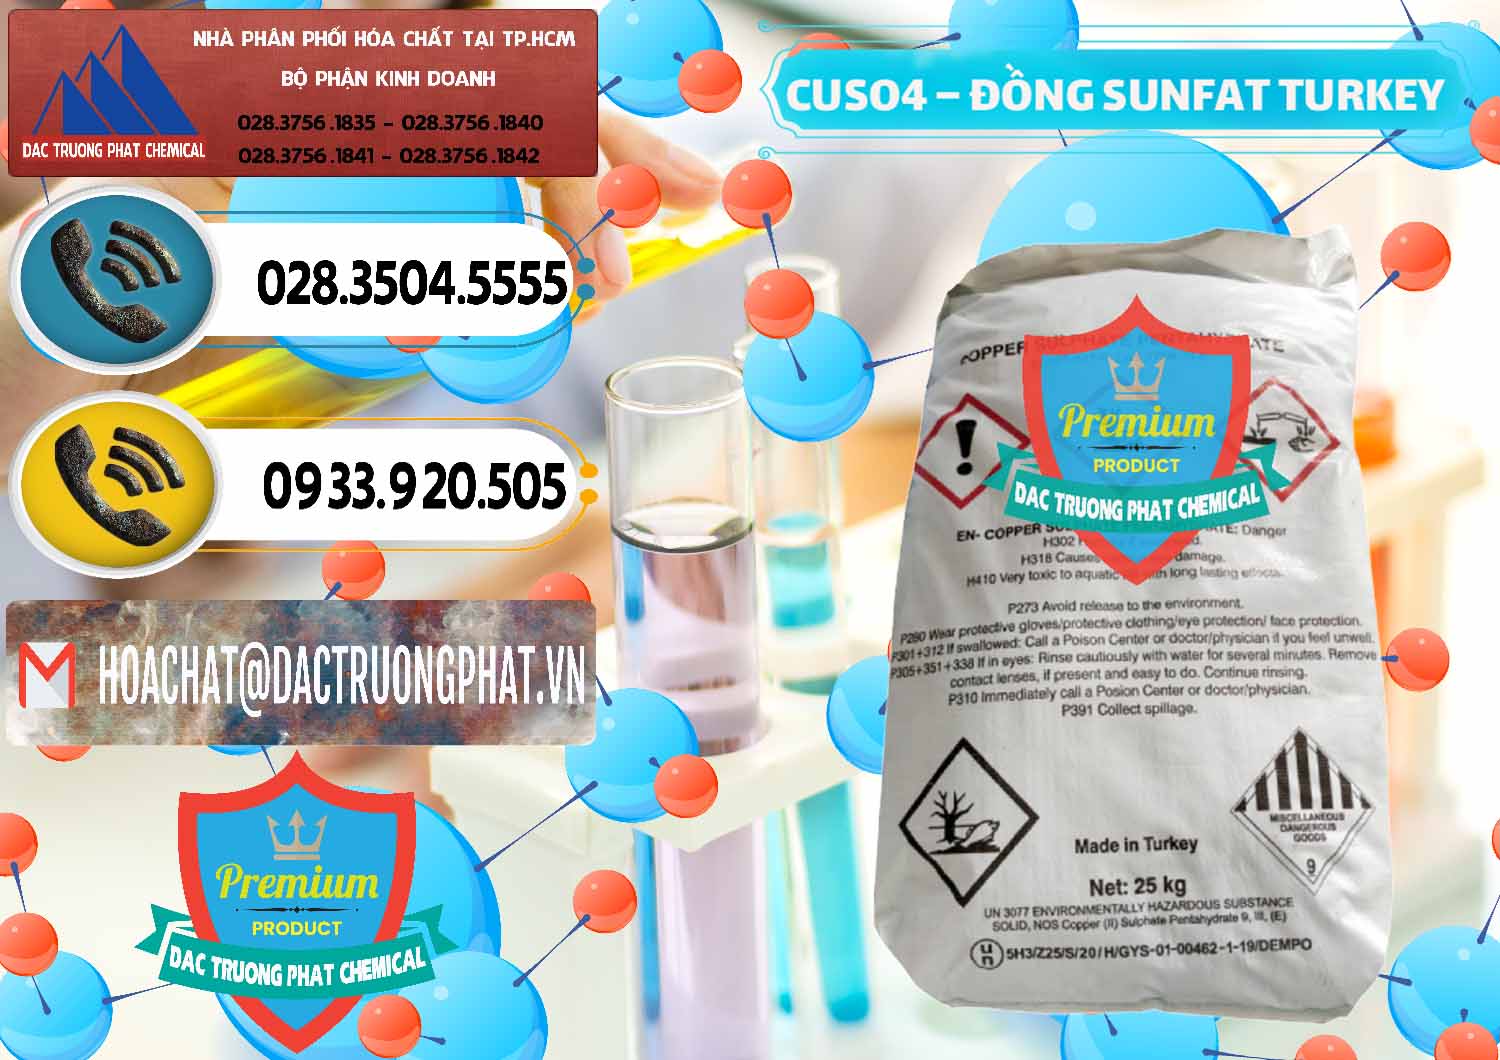 Công ty chuyên bán _ cung cấp CuSO4 – Đồng Sunfat Thổ Nhĩ Kỳ Turkey - 0481 - Cty chuyên nhập khẩu và phân phối hóa chất tại TP.HCM - hoachatdetnhuom.vn